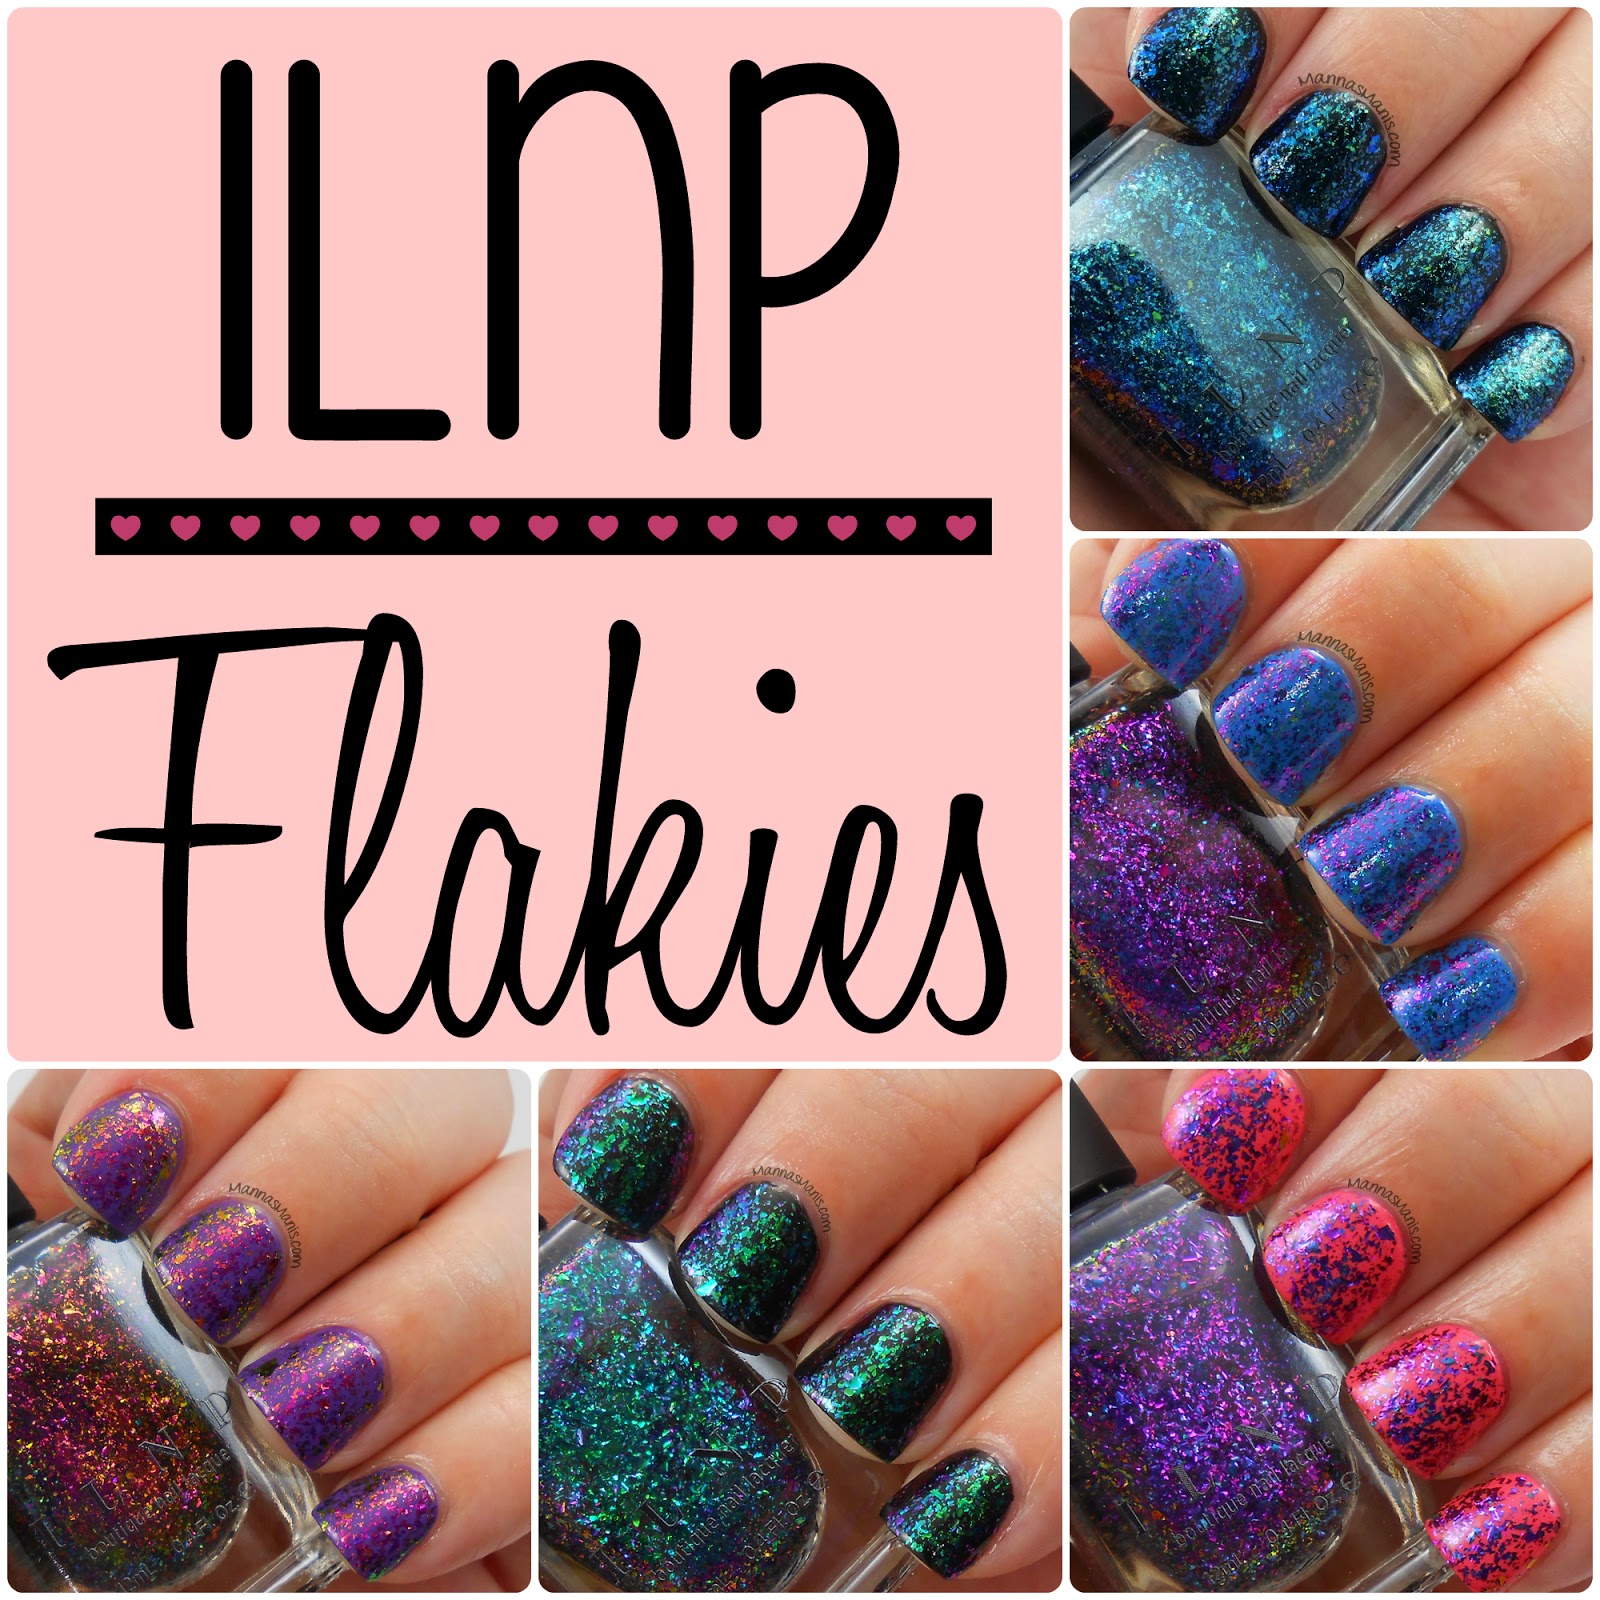 ILNP flakies